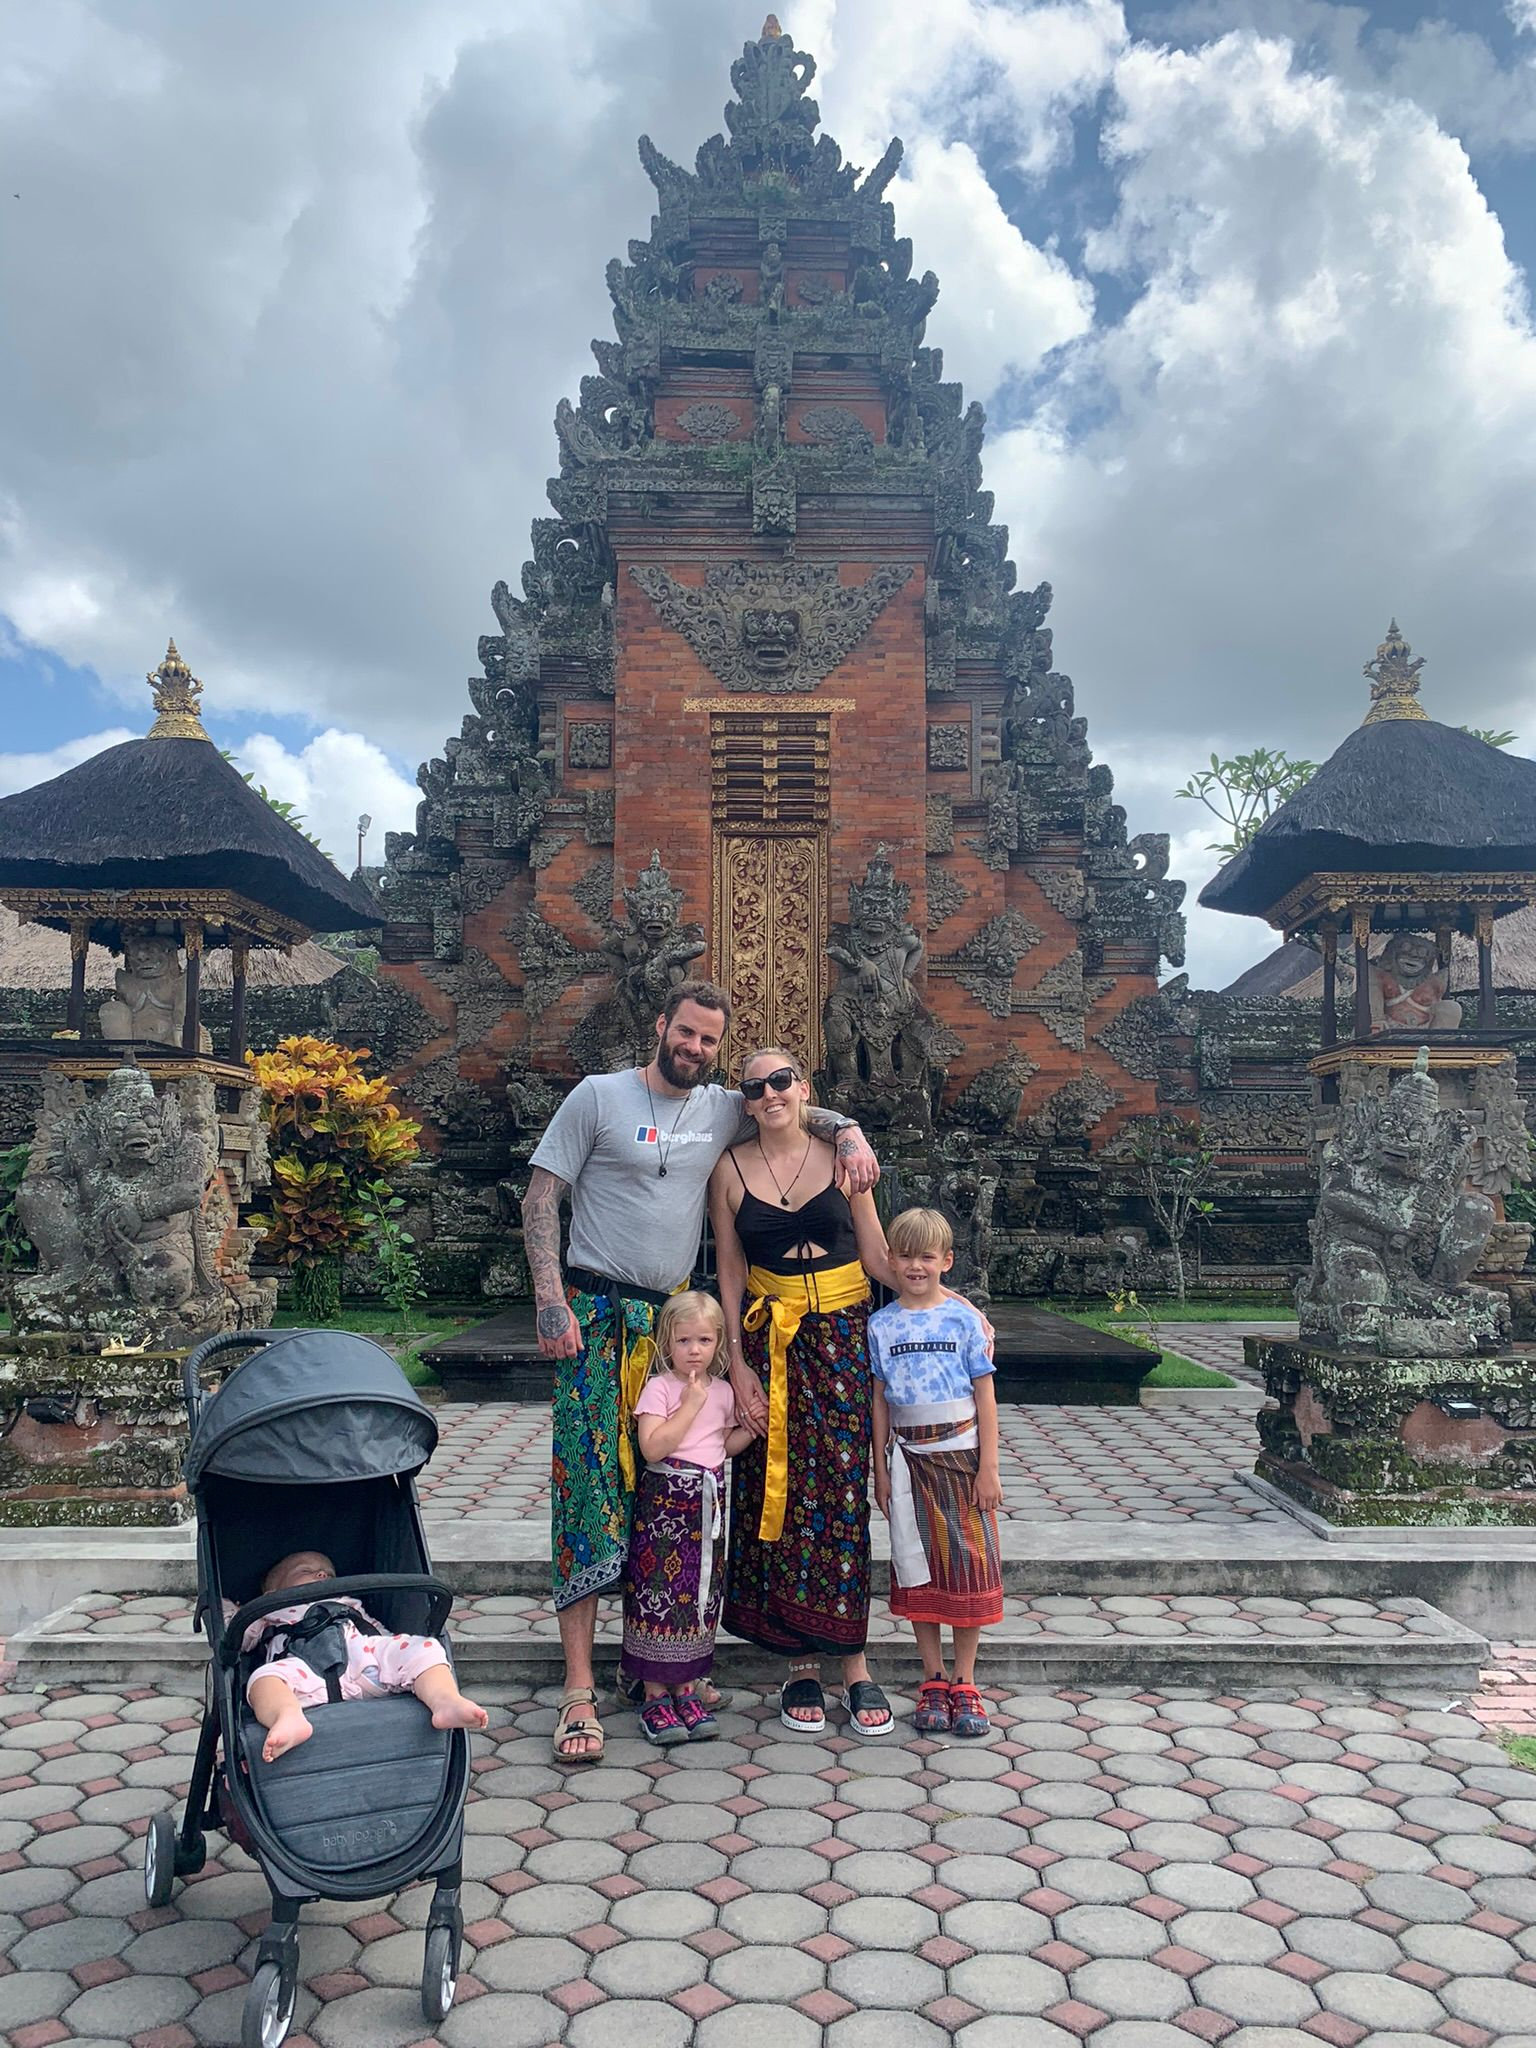 Ihre drei Kinder lieben ihr abenteuerreiches Leben auf der indonesischen Insel, sagt Mark